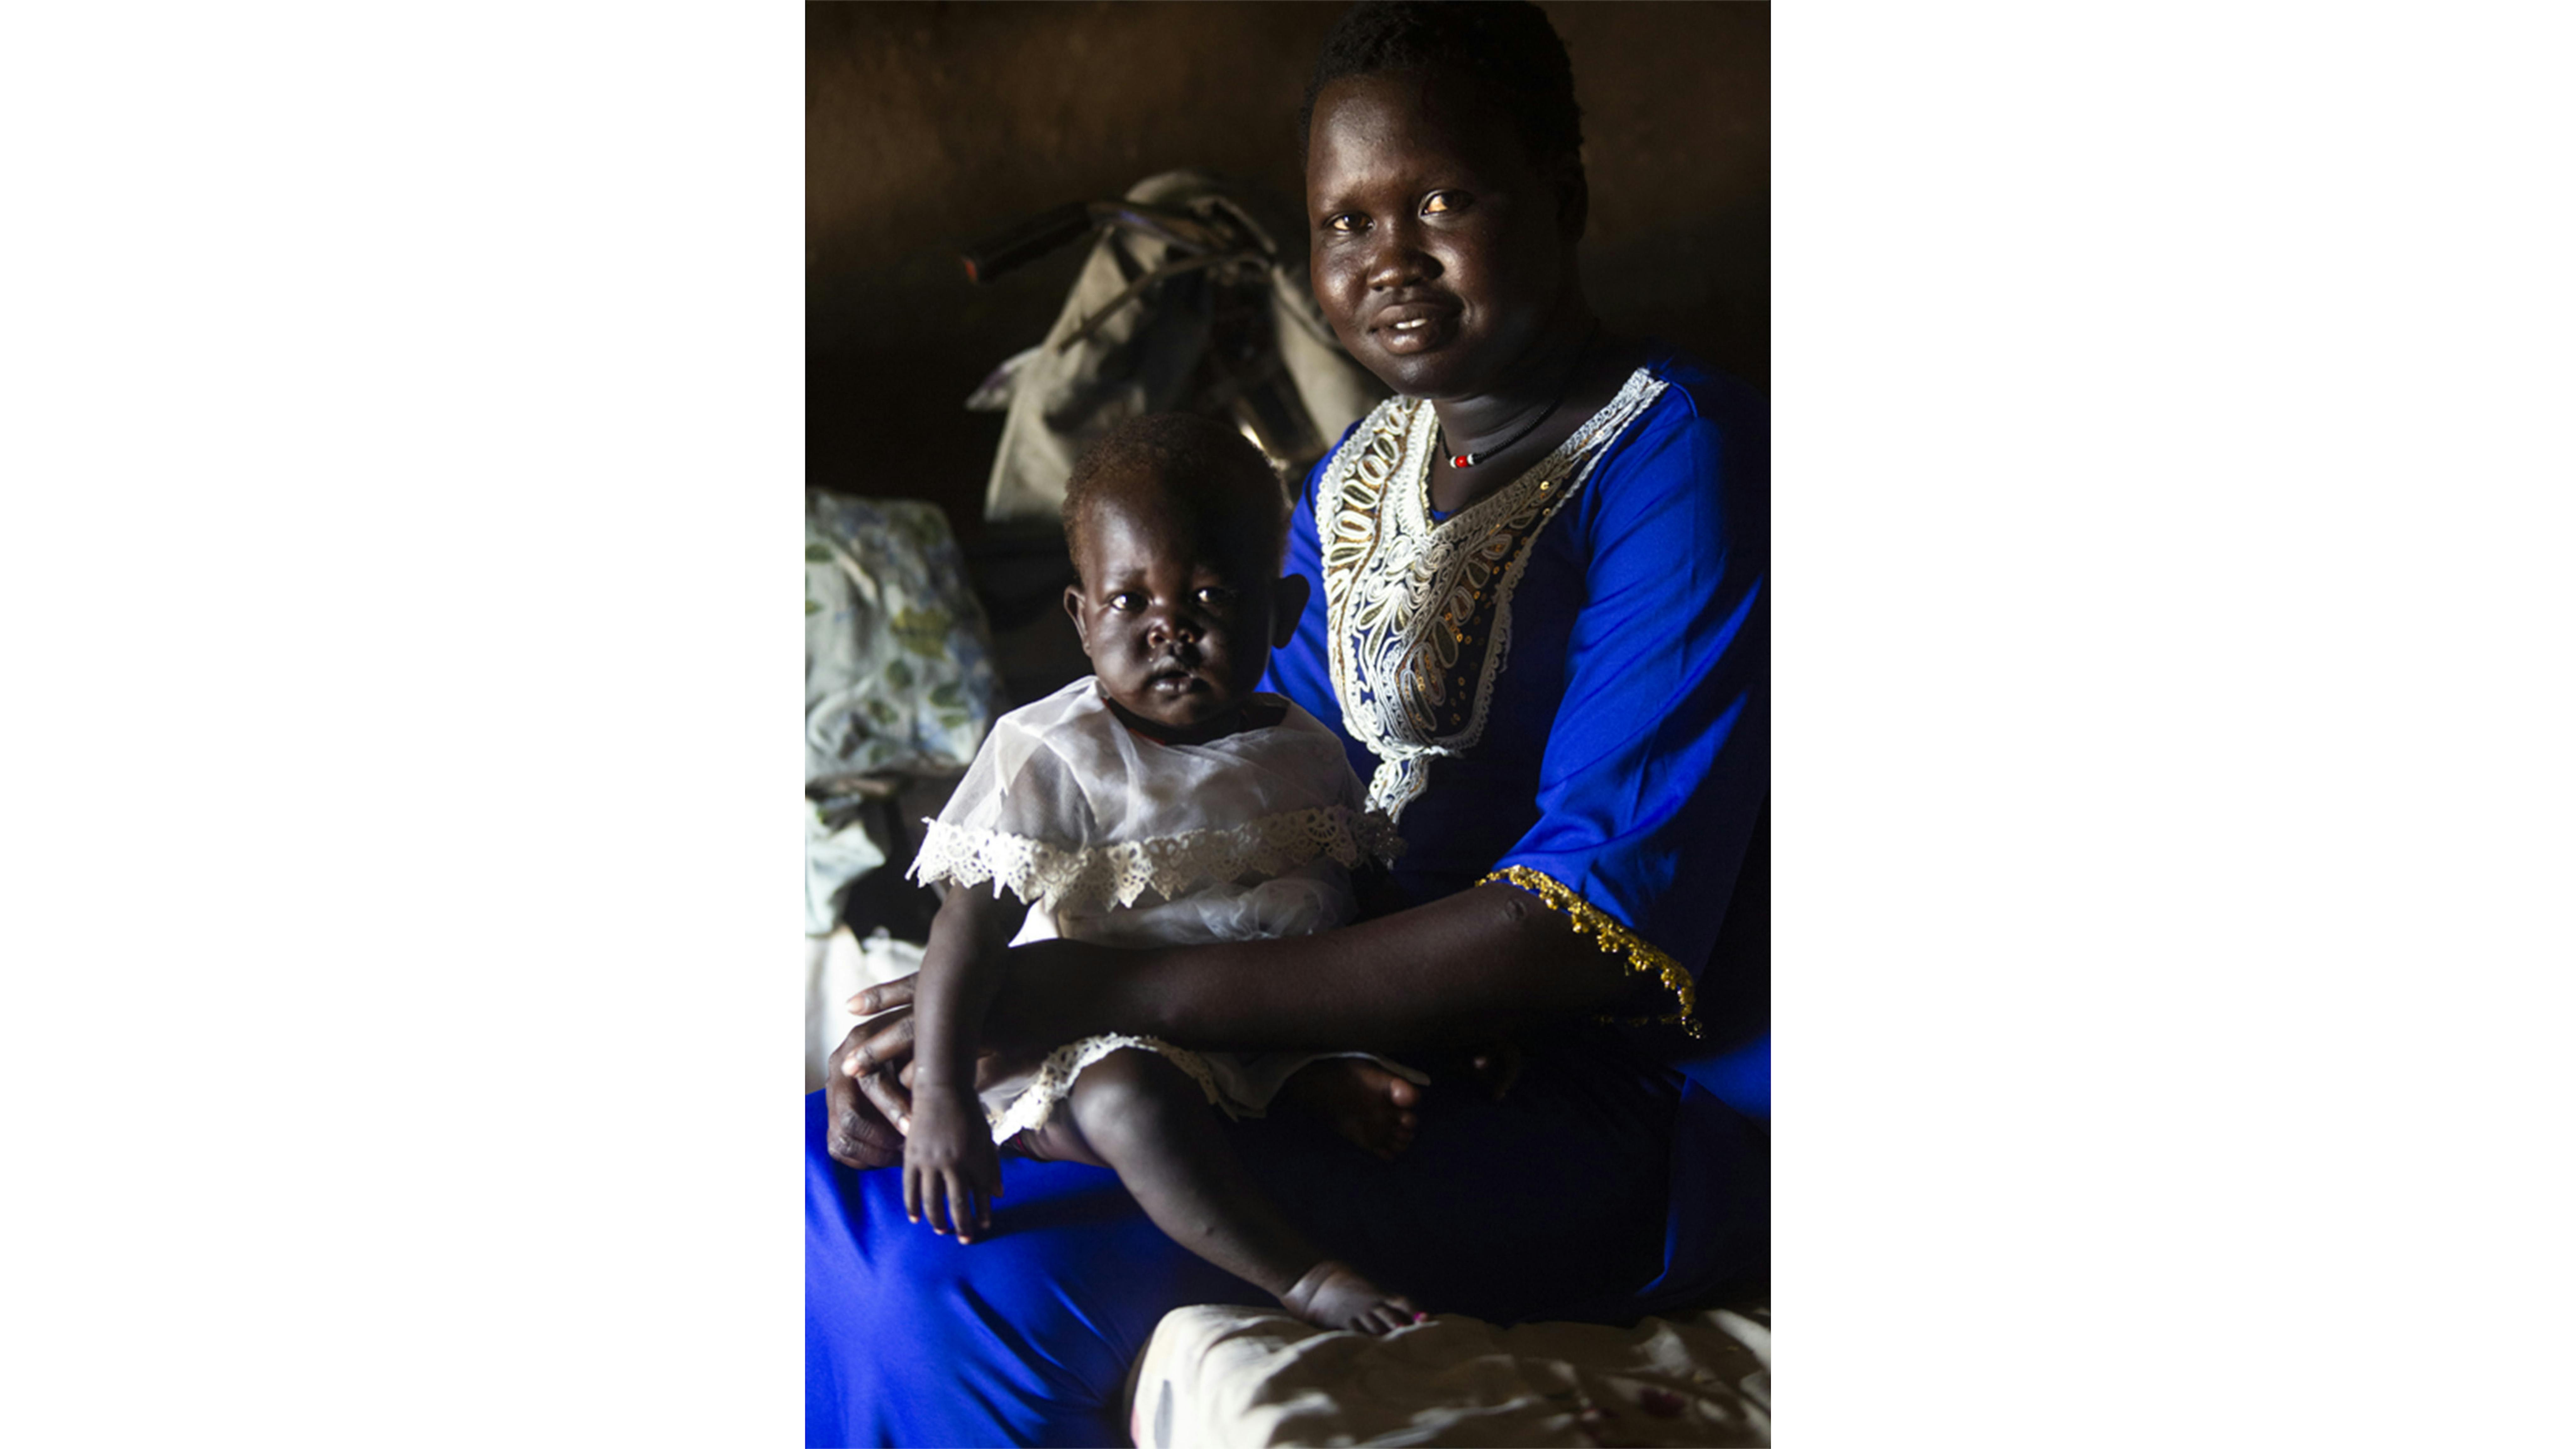 Sud Sudan - Ayak Garang, 17 anni, nella sua casa con il suo bambino di un anno, Diing Roda, Ayak è stata costretta a sposare un uomo anziano quando aveva solo 15 anni e la famiglia ha ricevuto 15 mucche